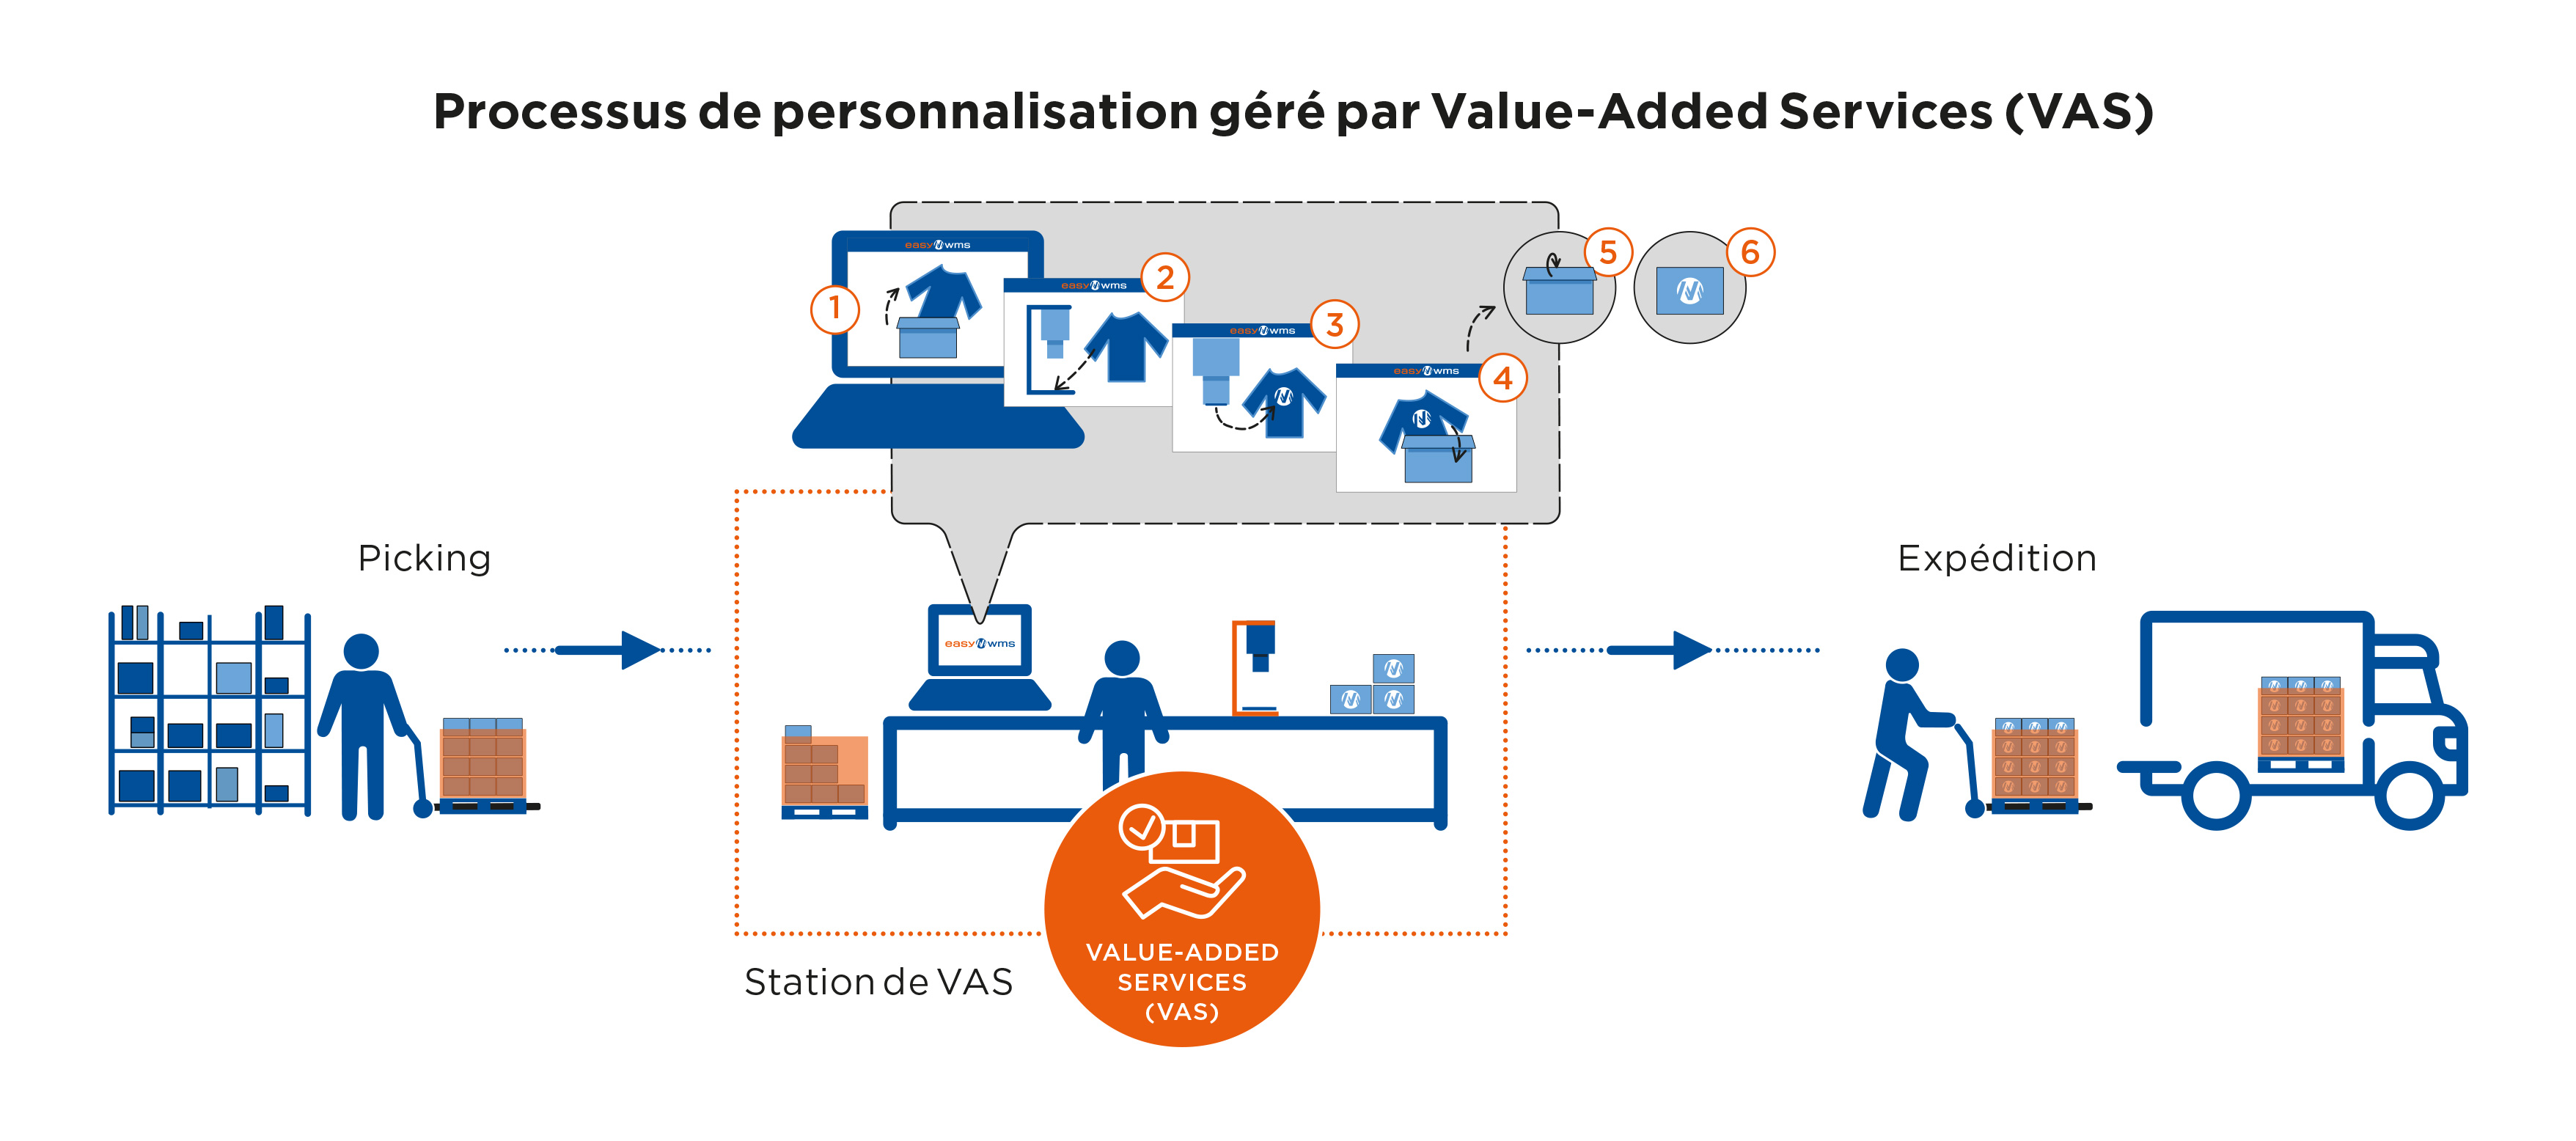 Processus de personnalisation géré par Value-Added Services (VAS)